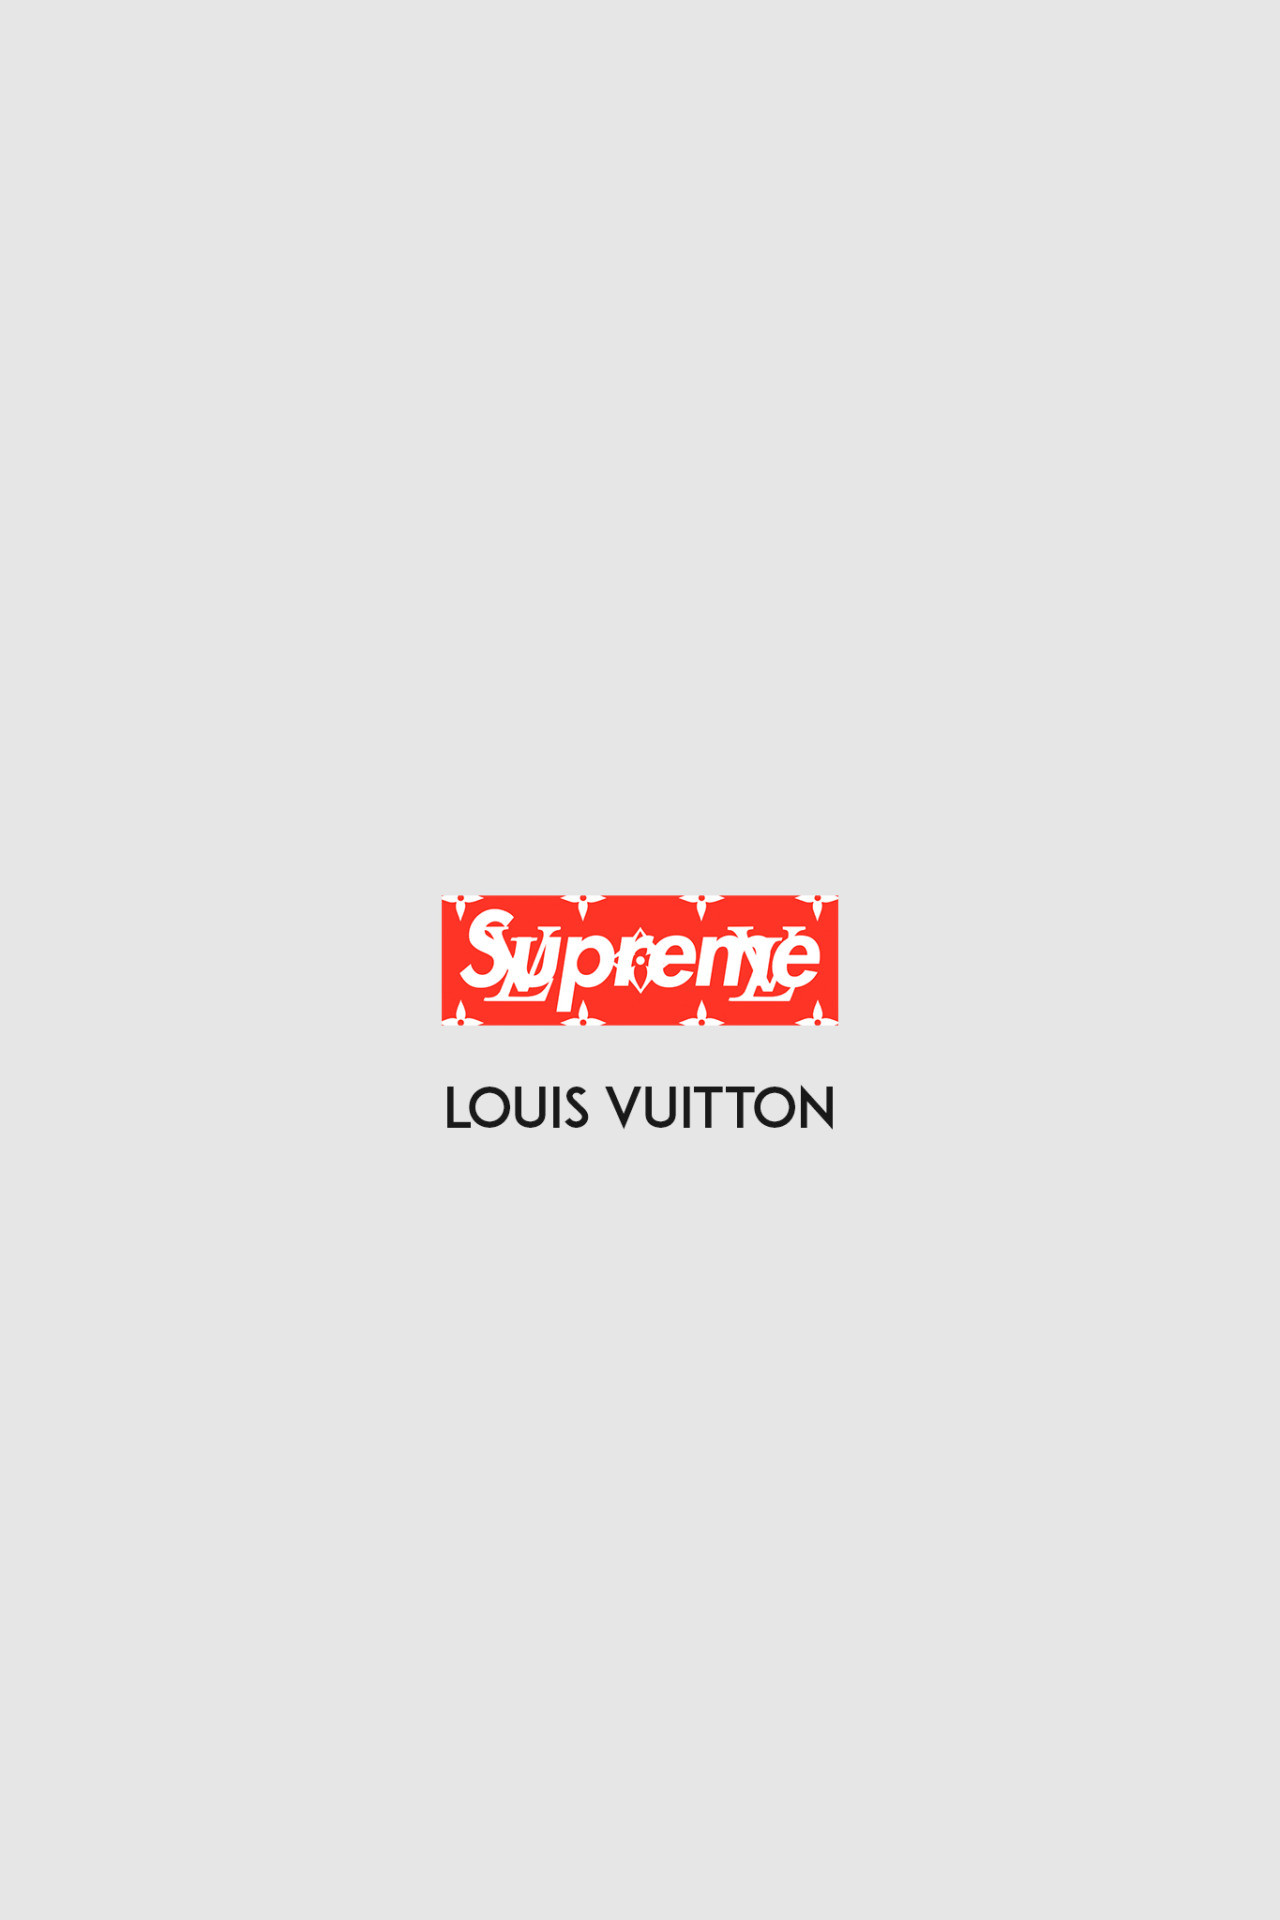 Supreme x Louis Vuitton wallpapers